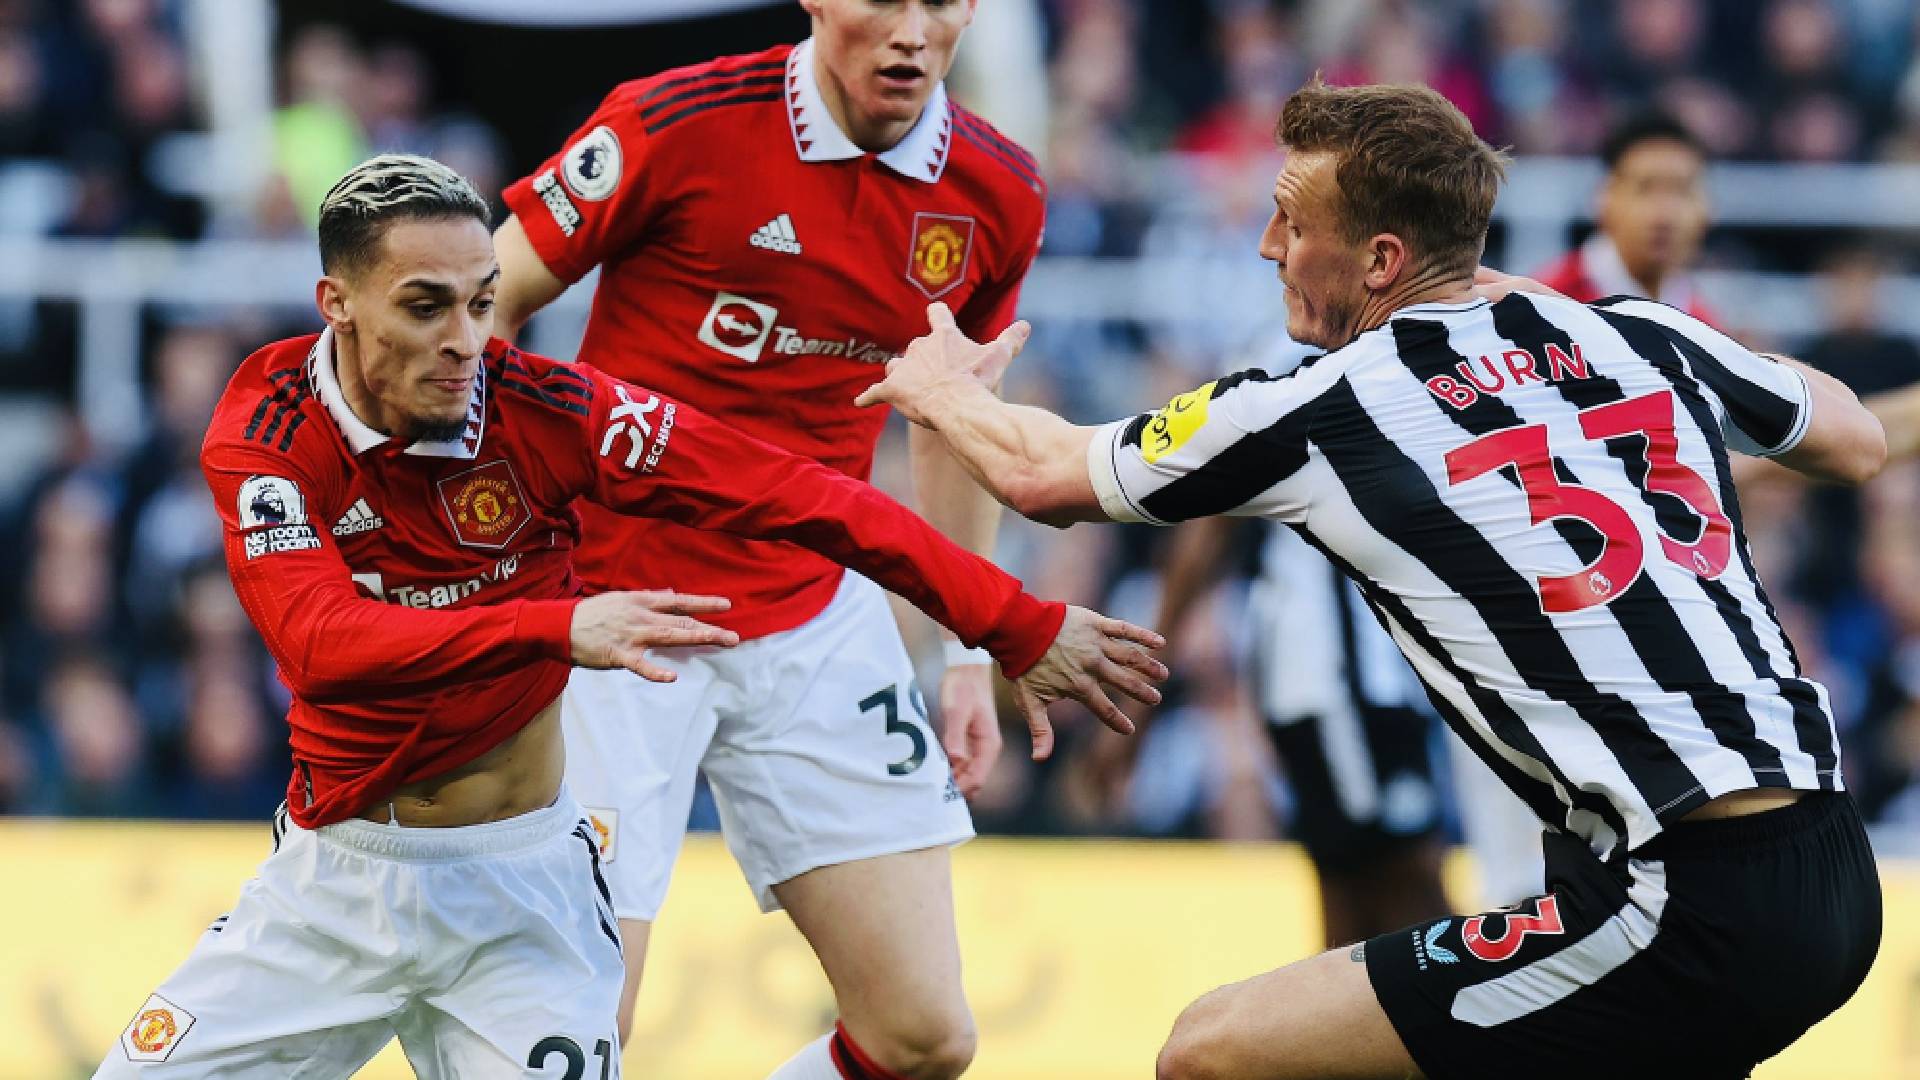 newcastle vs man utd twitter man utd EPL: Newcastle 'Bersahurkan' Manchester United Di St. James Park